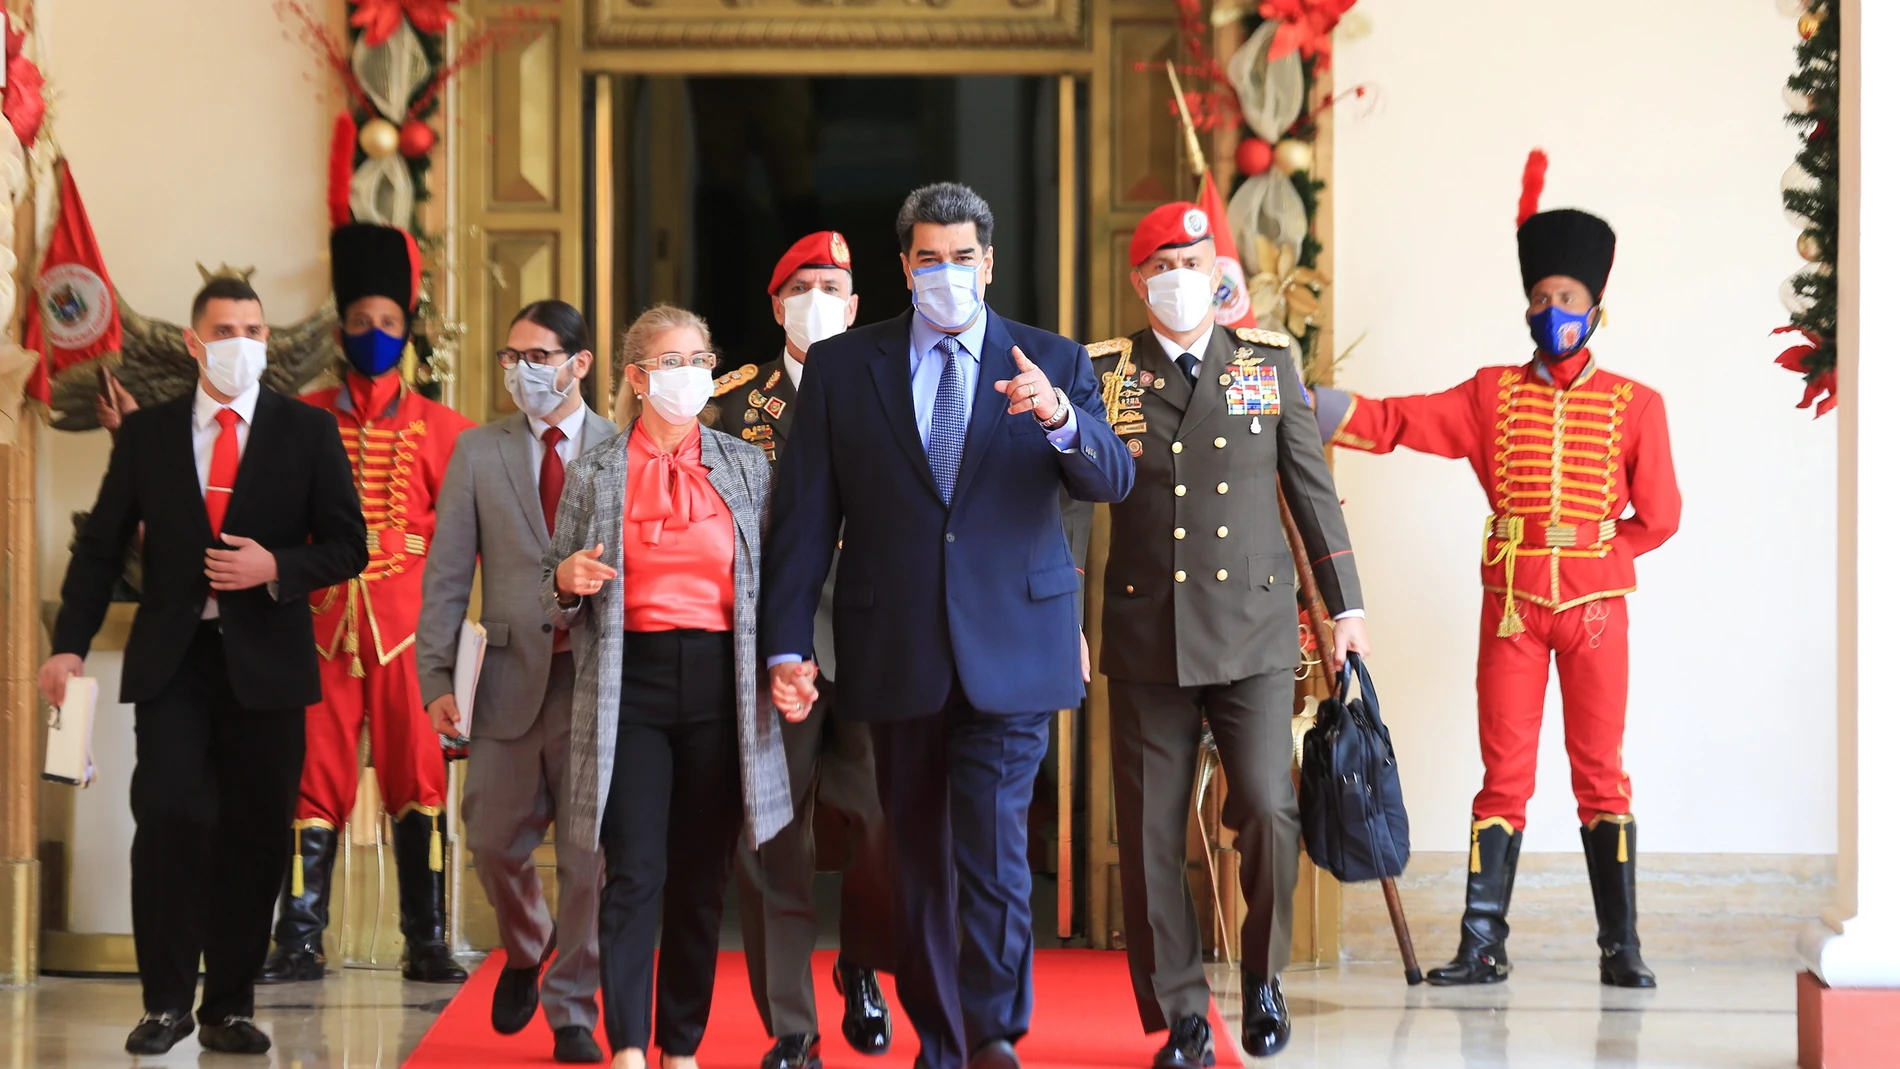 El presidente bolivariano junto a su mujer Cilia Flores en el Palacio de Miraflores antes de dar su rueda de prensa sobre la fuga de Leopoldo López